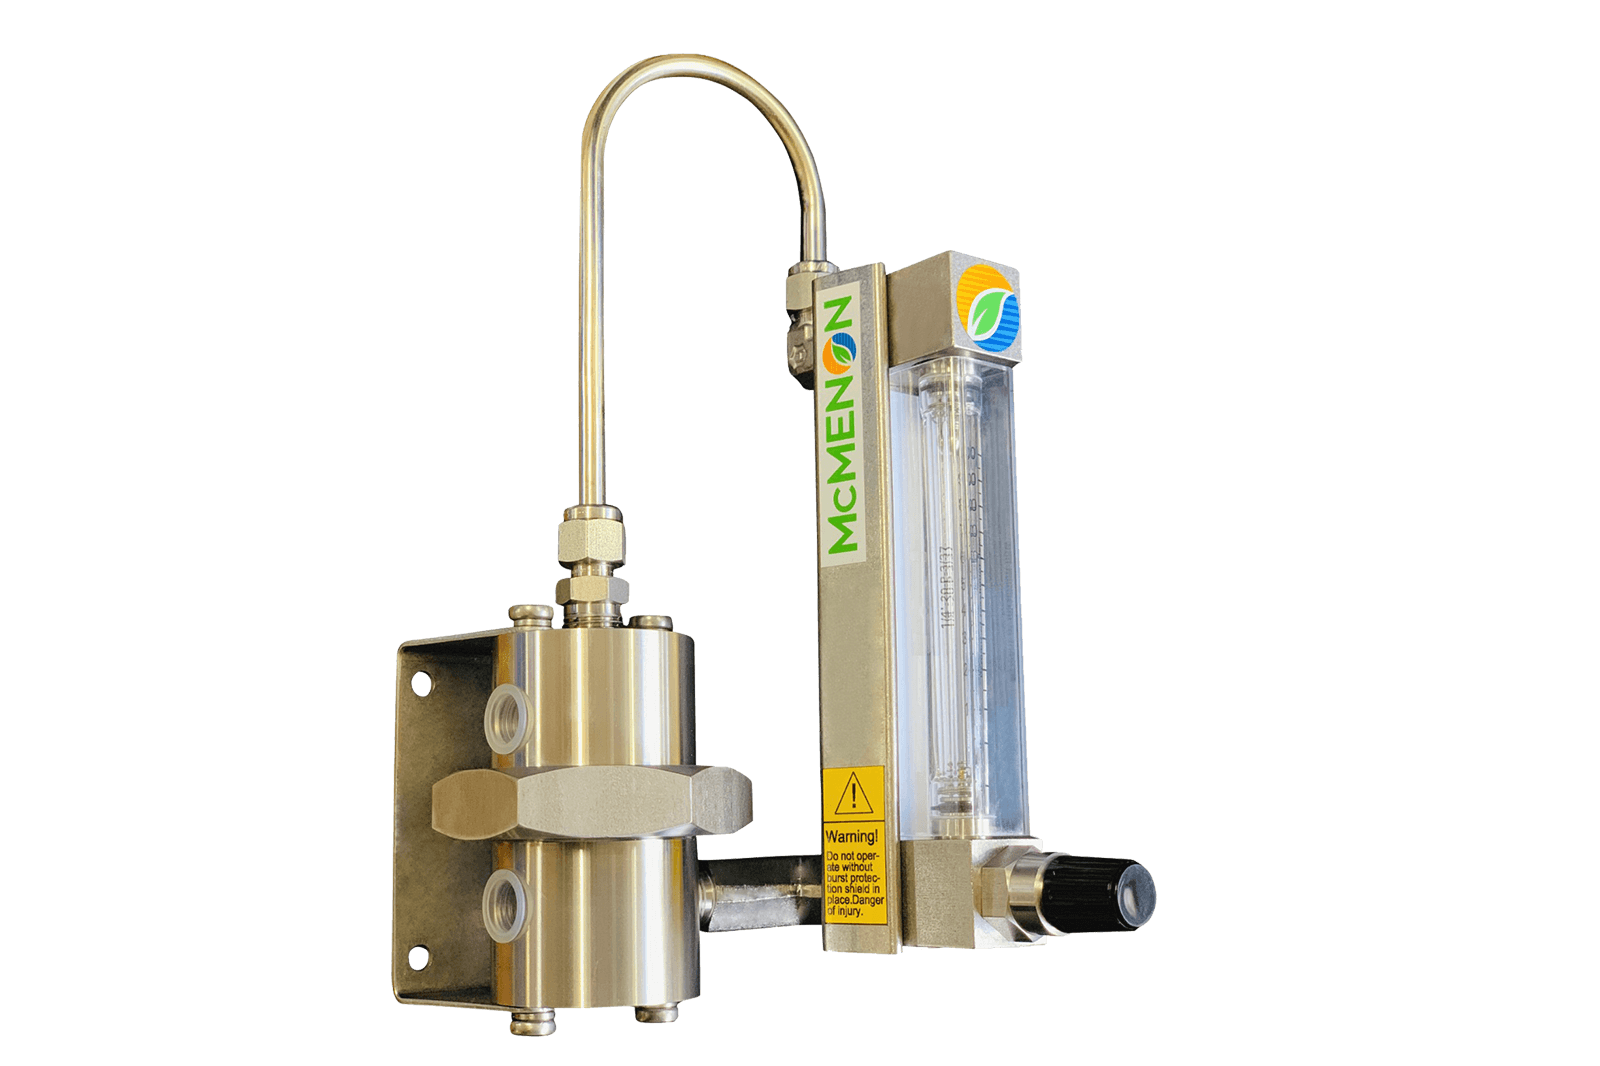 Enkelt snap-in variabelt area (VA) rotameter med regulator for jevn strøm av ulike væsker eller gasser.